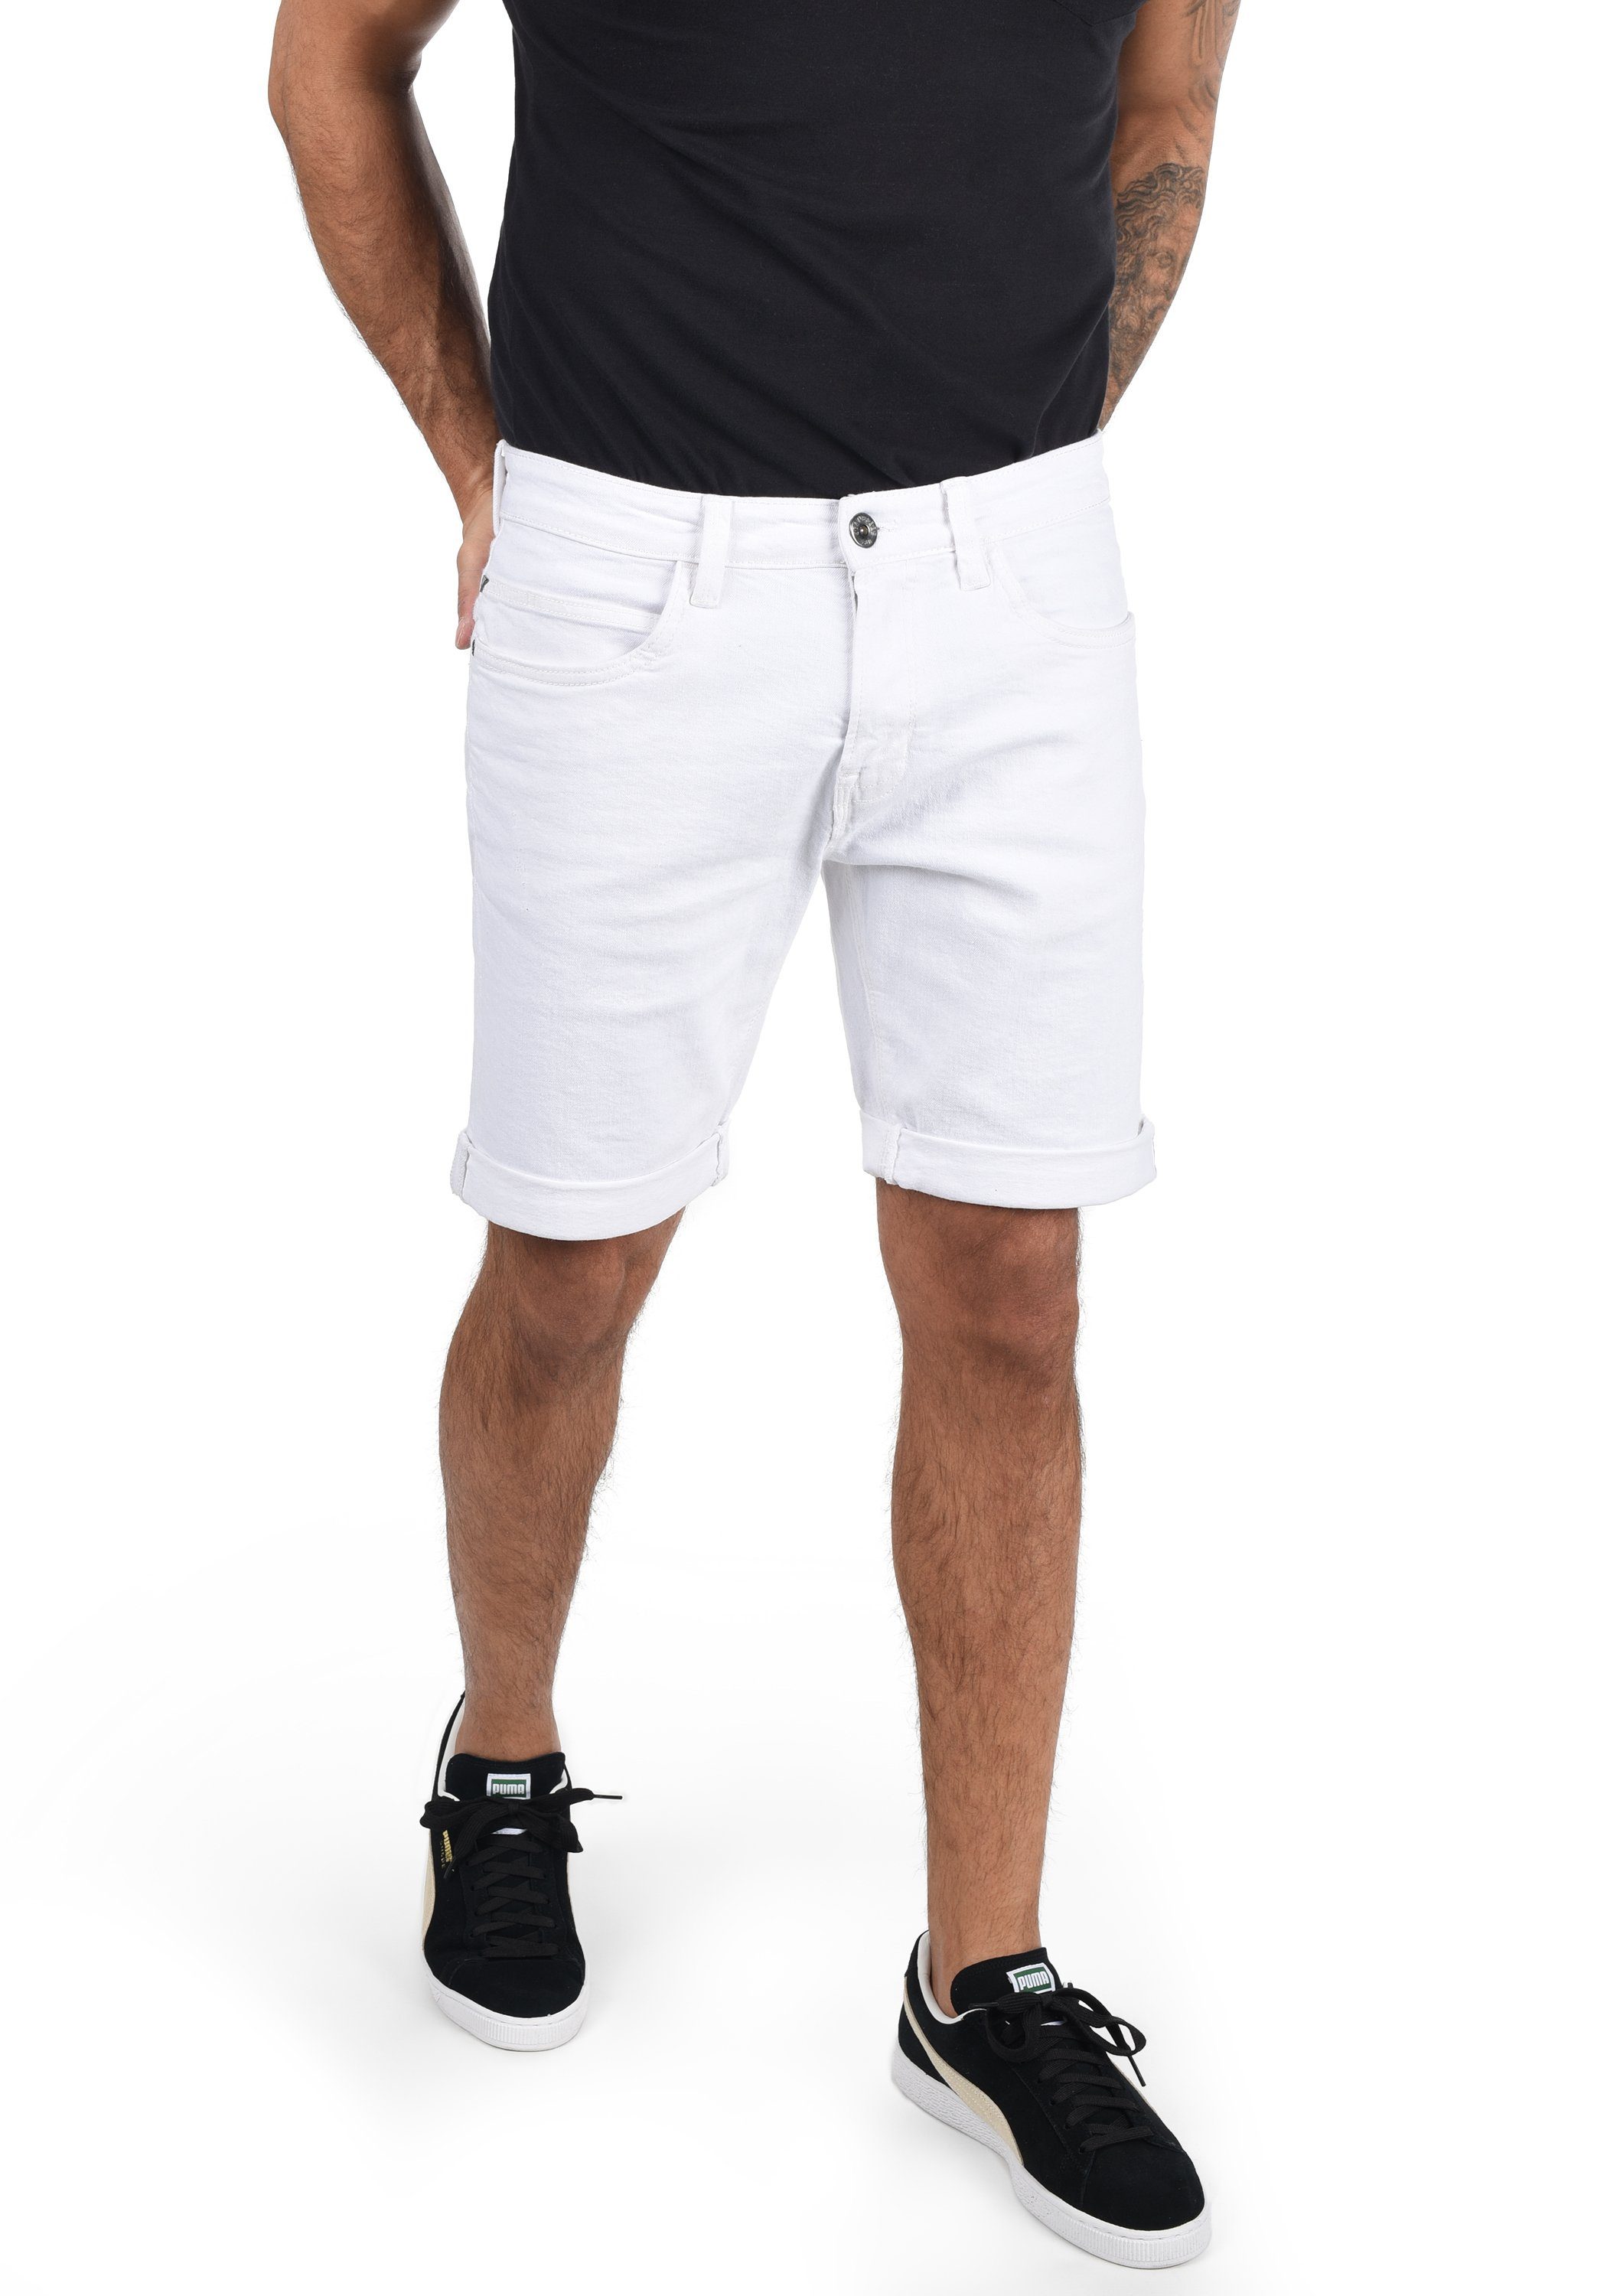 Weiße Bermudas für Herren kaufen » Weiße Bermuda Shorts | OTTO